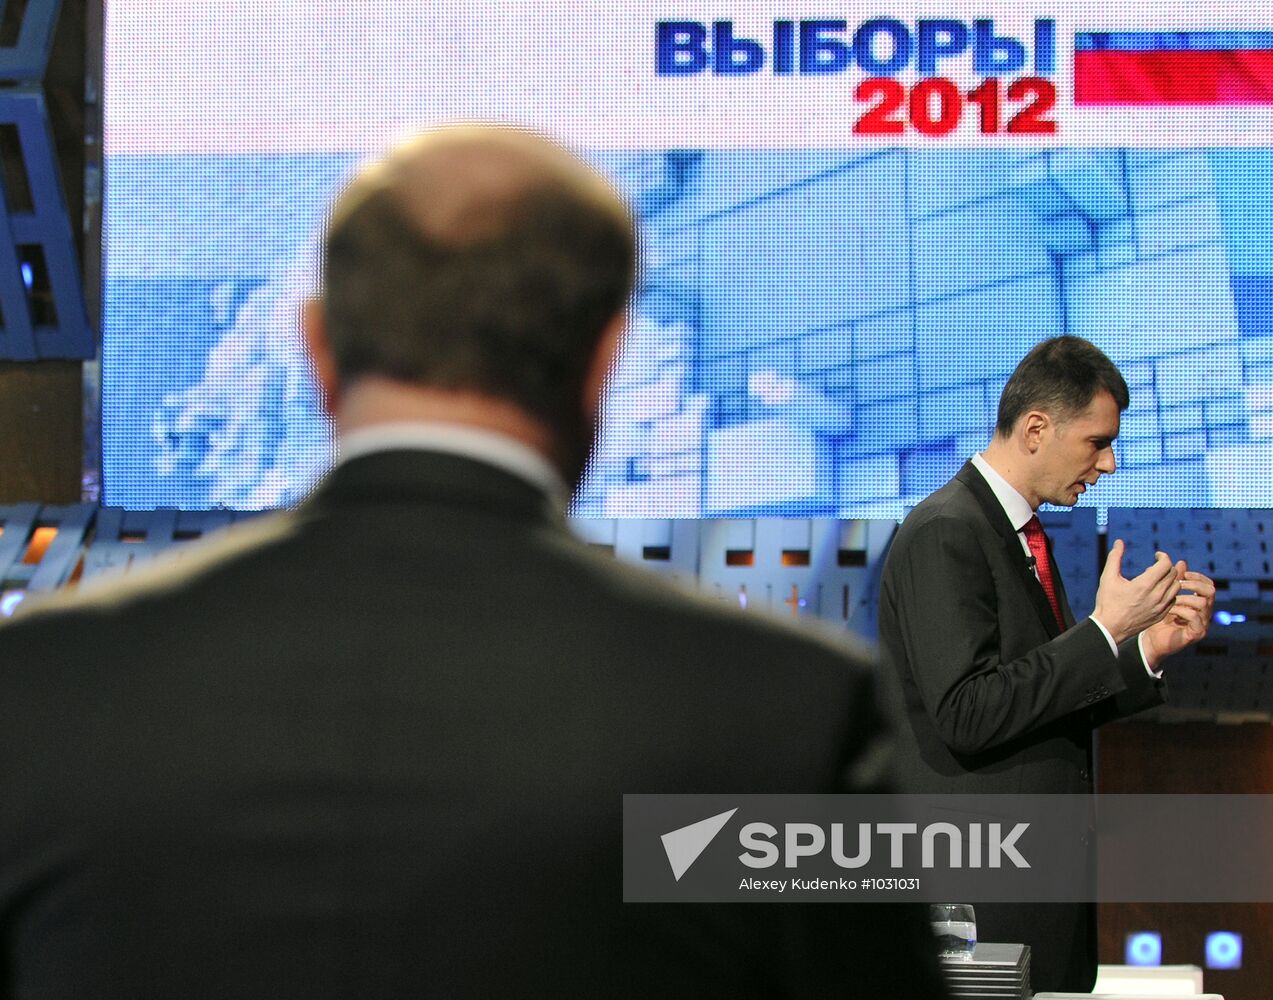 Gennady Zyuganov, Mikhail Prokhorov hold debate